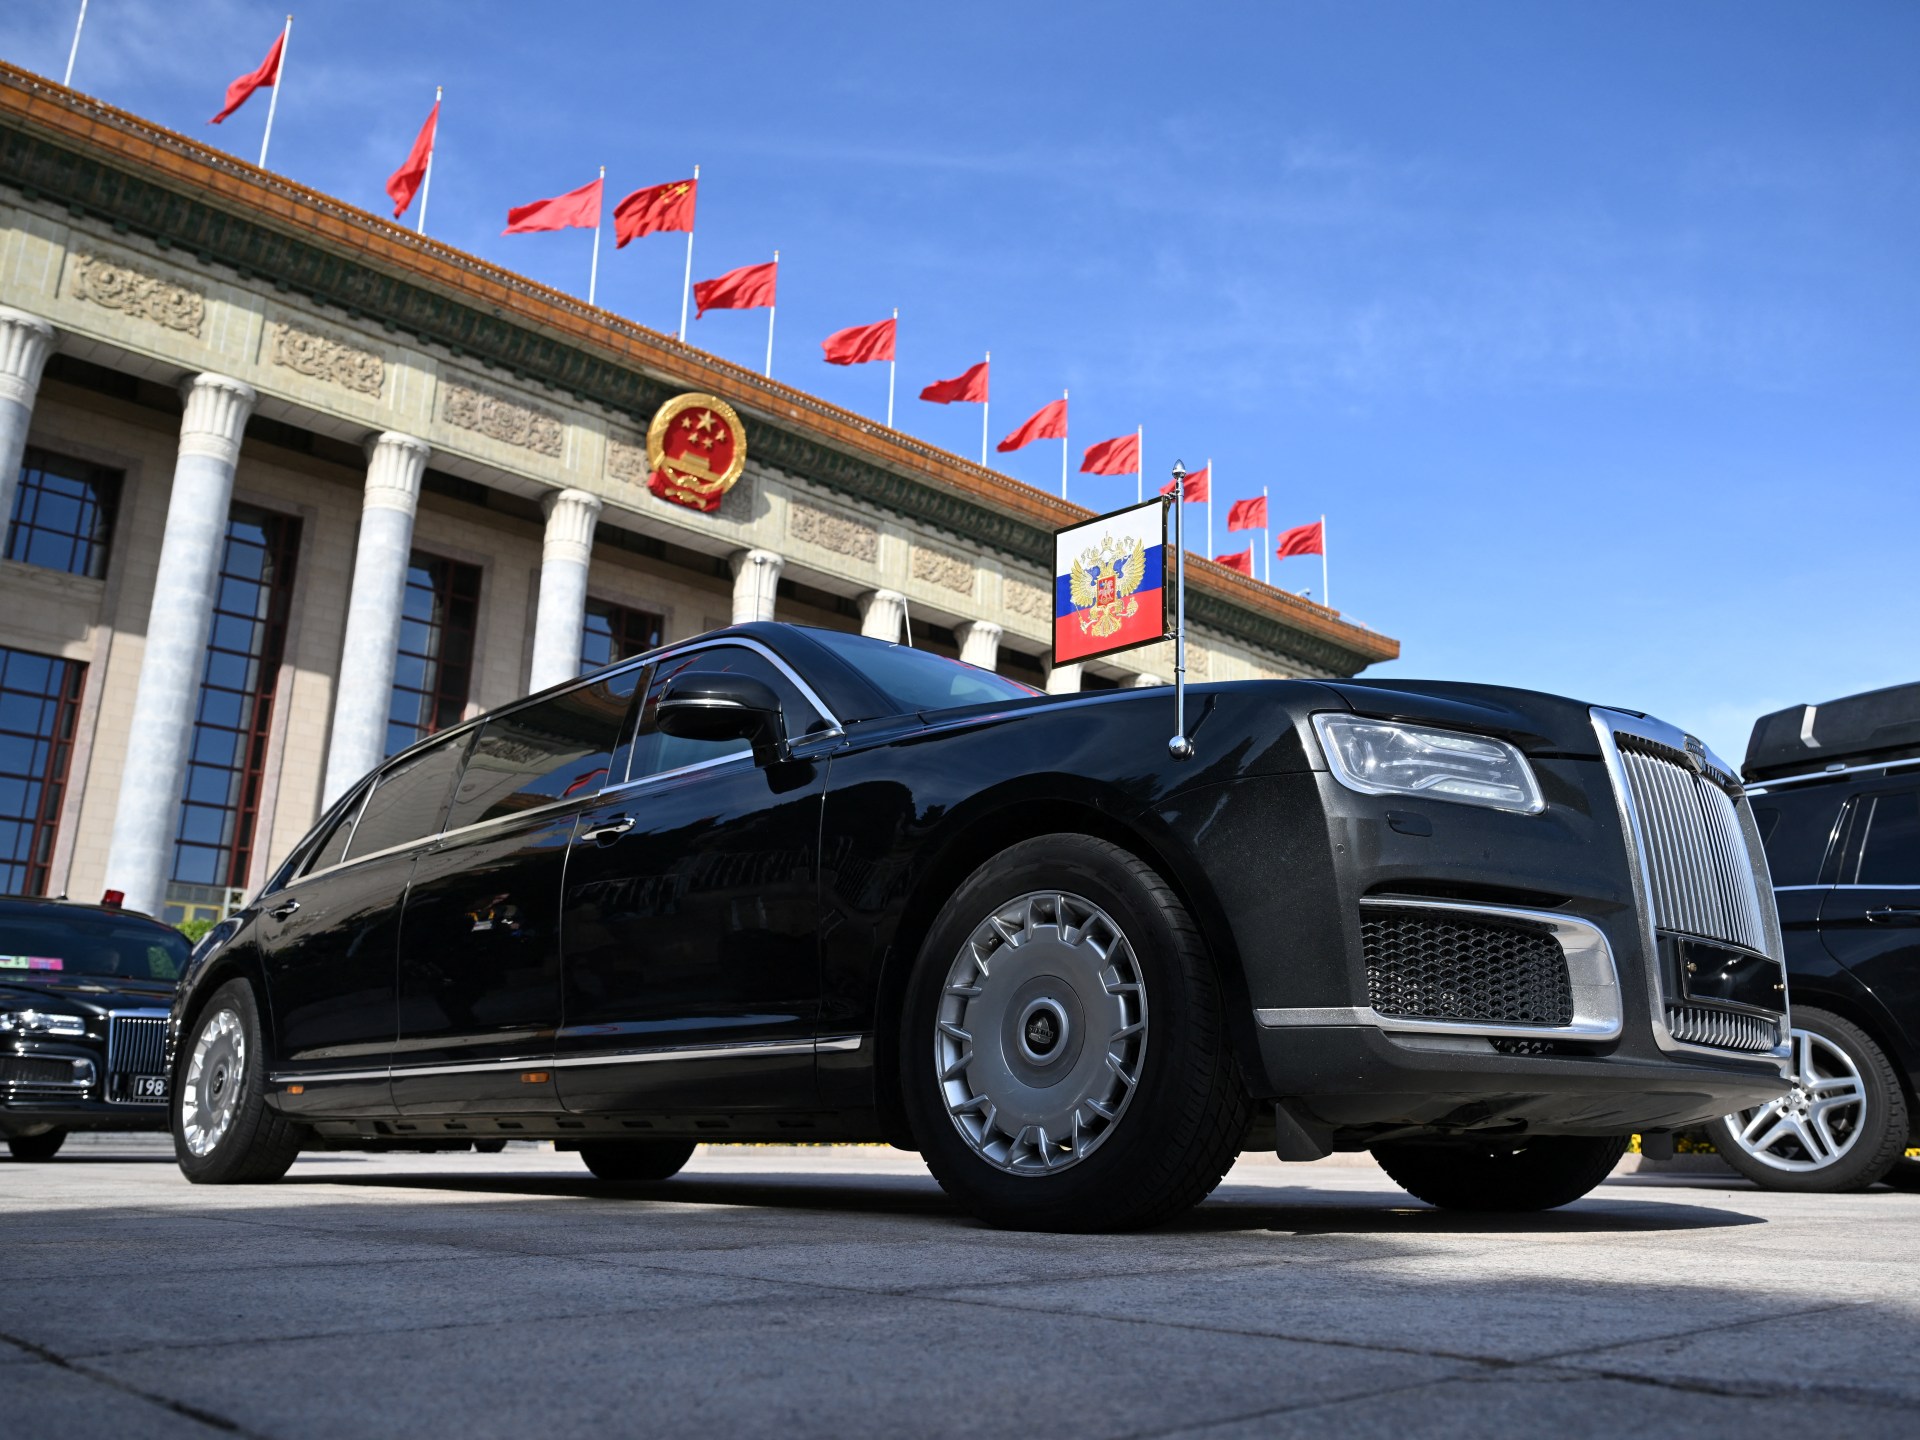 Kim Jong Un viaggia su una lussuosa limousine russa regalatagli da Putin  Notizie di politica